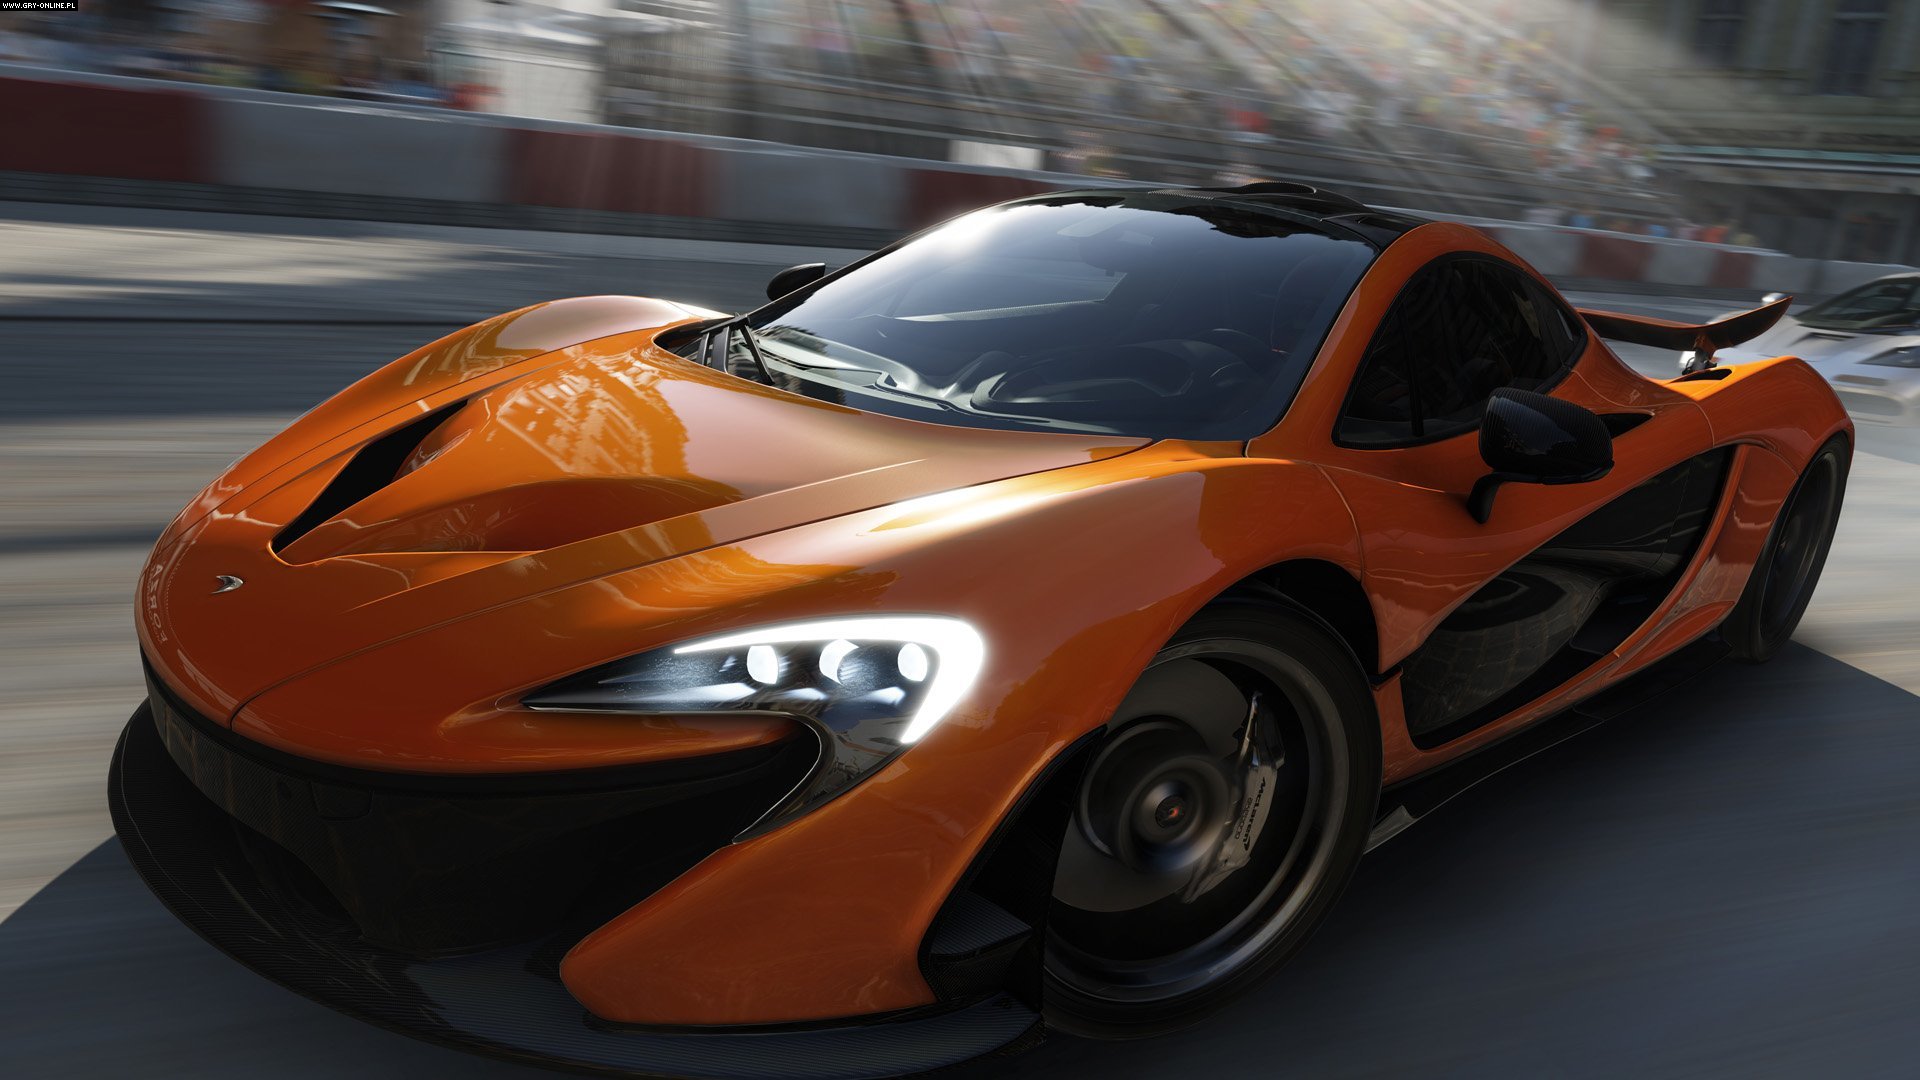 Descarga gratuita de fondo de pantalla para móvil de Forza Motorsport 5, Fuerza, Videojuego.